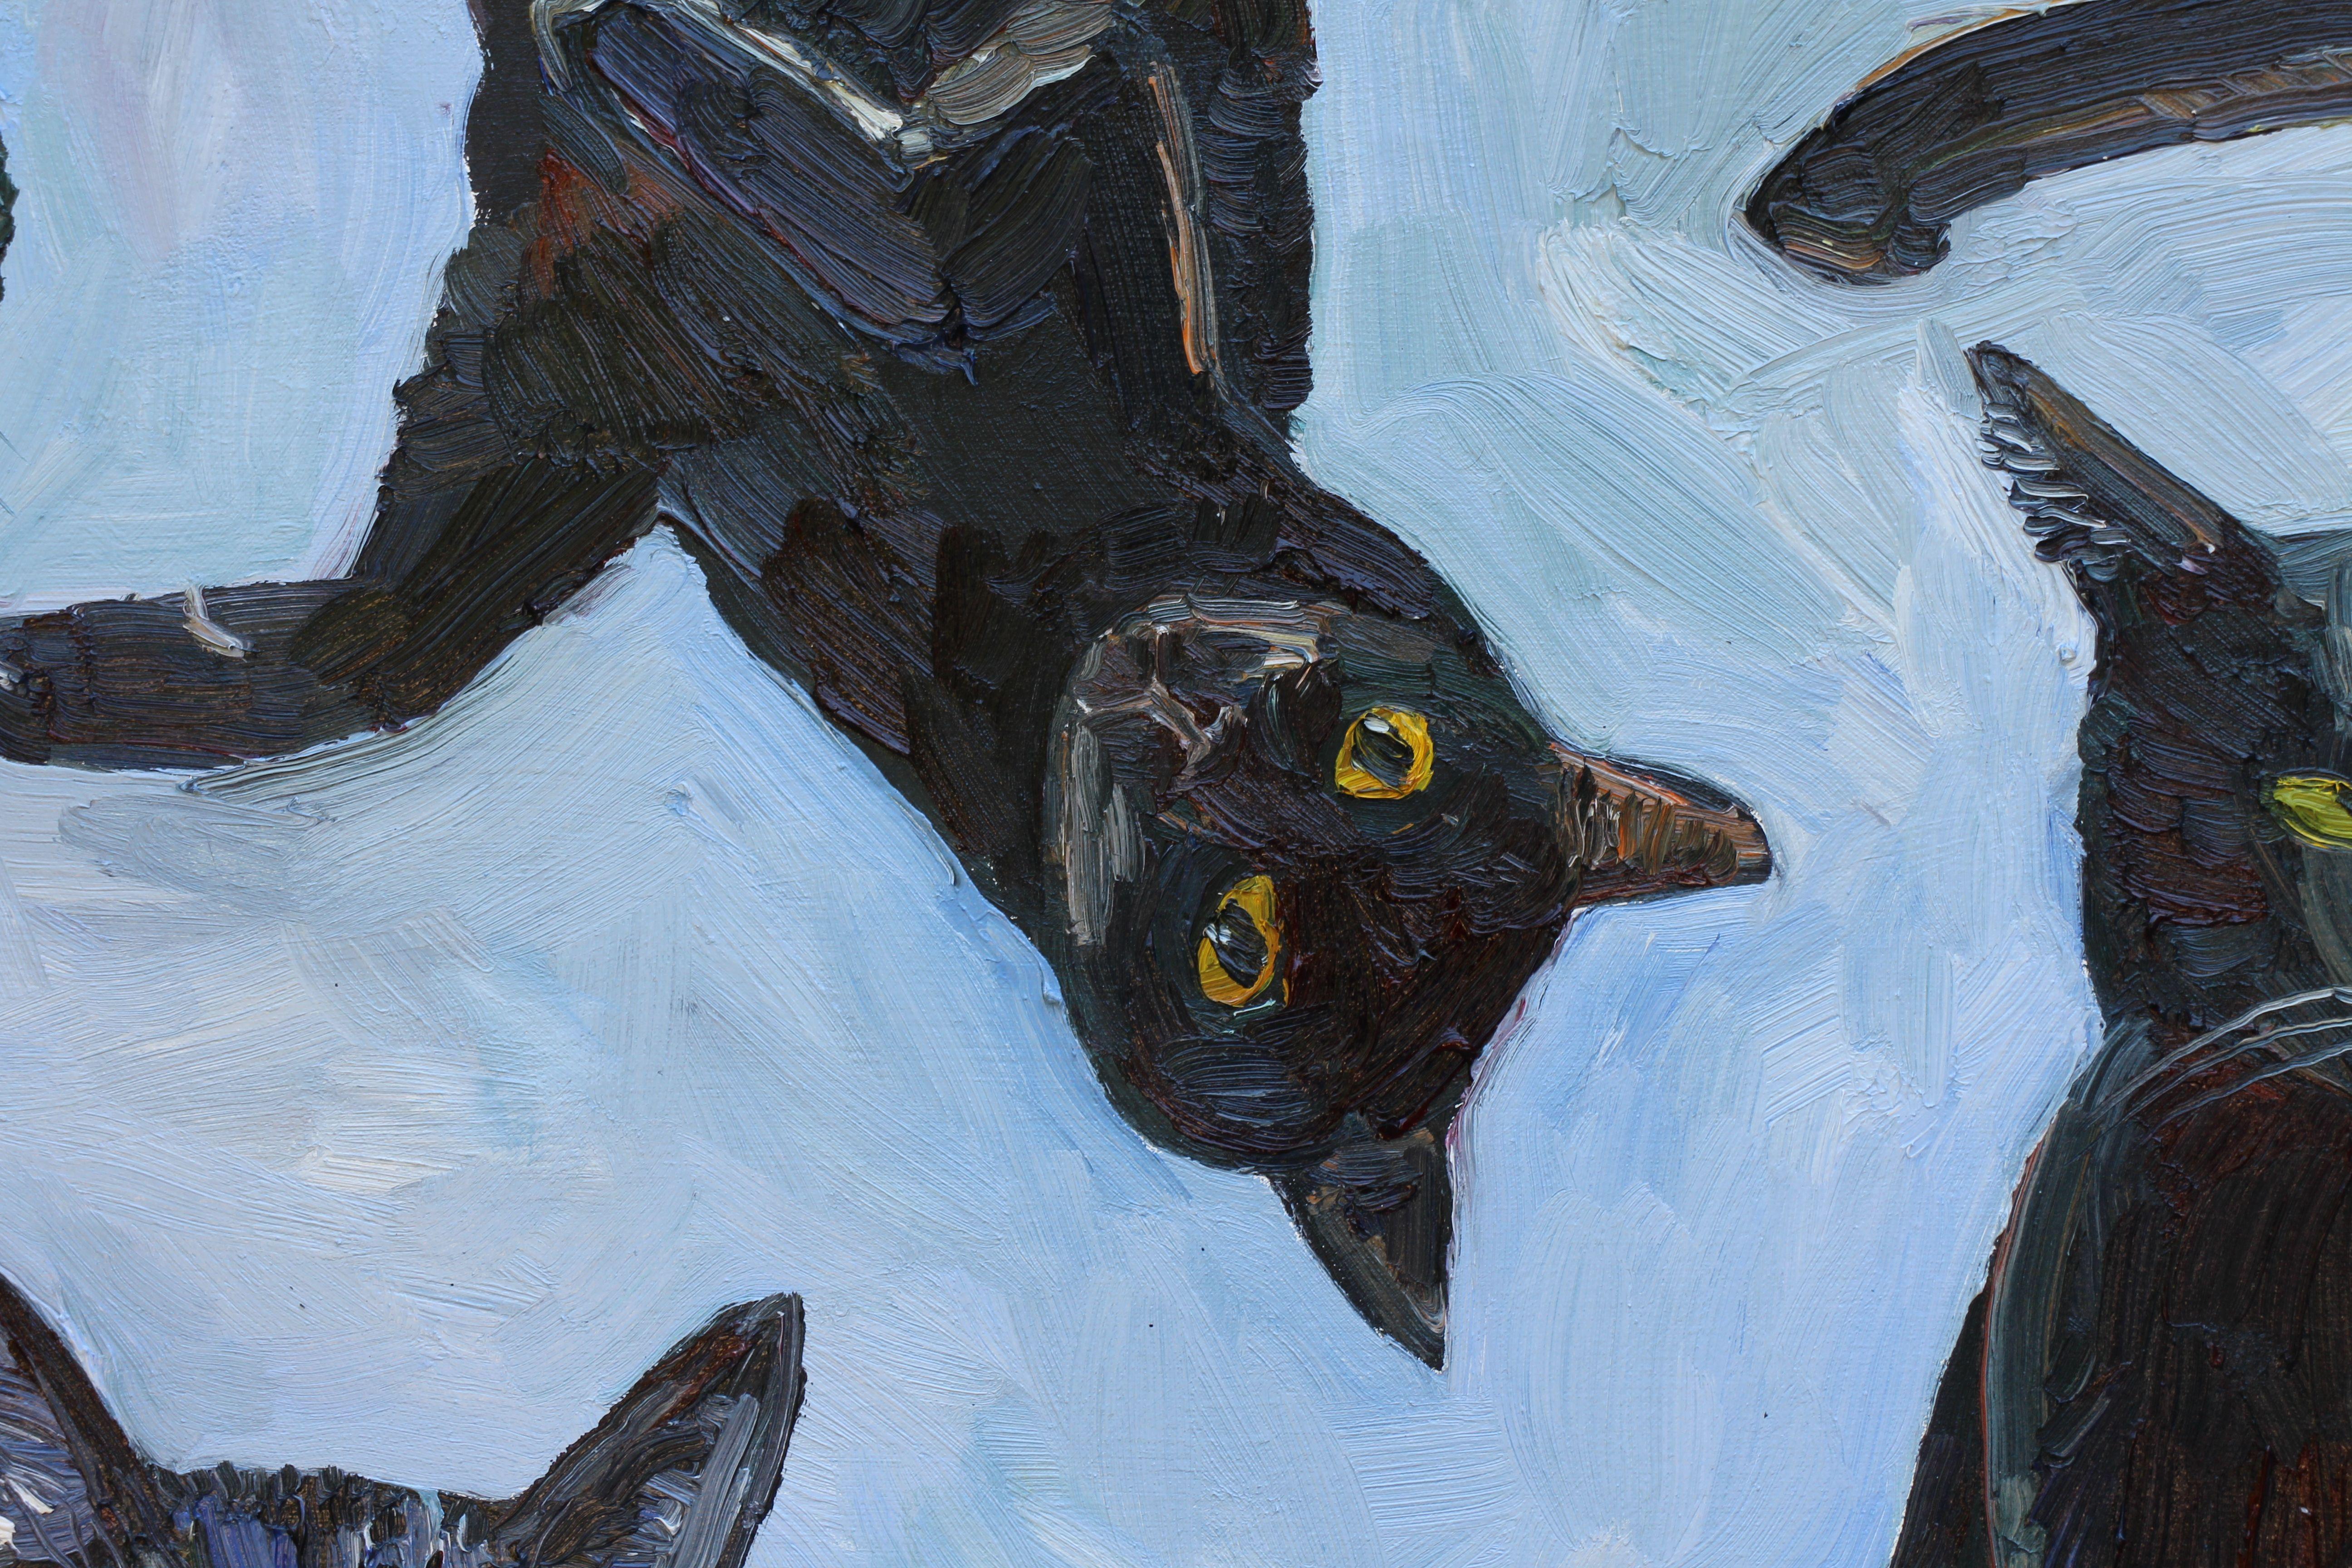 Ich habe ein Kickstarter-Projekt durchgeführt, bei dem ich 100 Katzenporträts gemalt habe. Das Endergebnis war, drei große Gemälde zu malen, von denen ich auf einem nur orangefarbene Katzen und auf den beiden anderen nur schwarze Katzen und